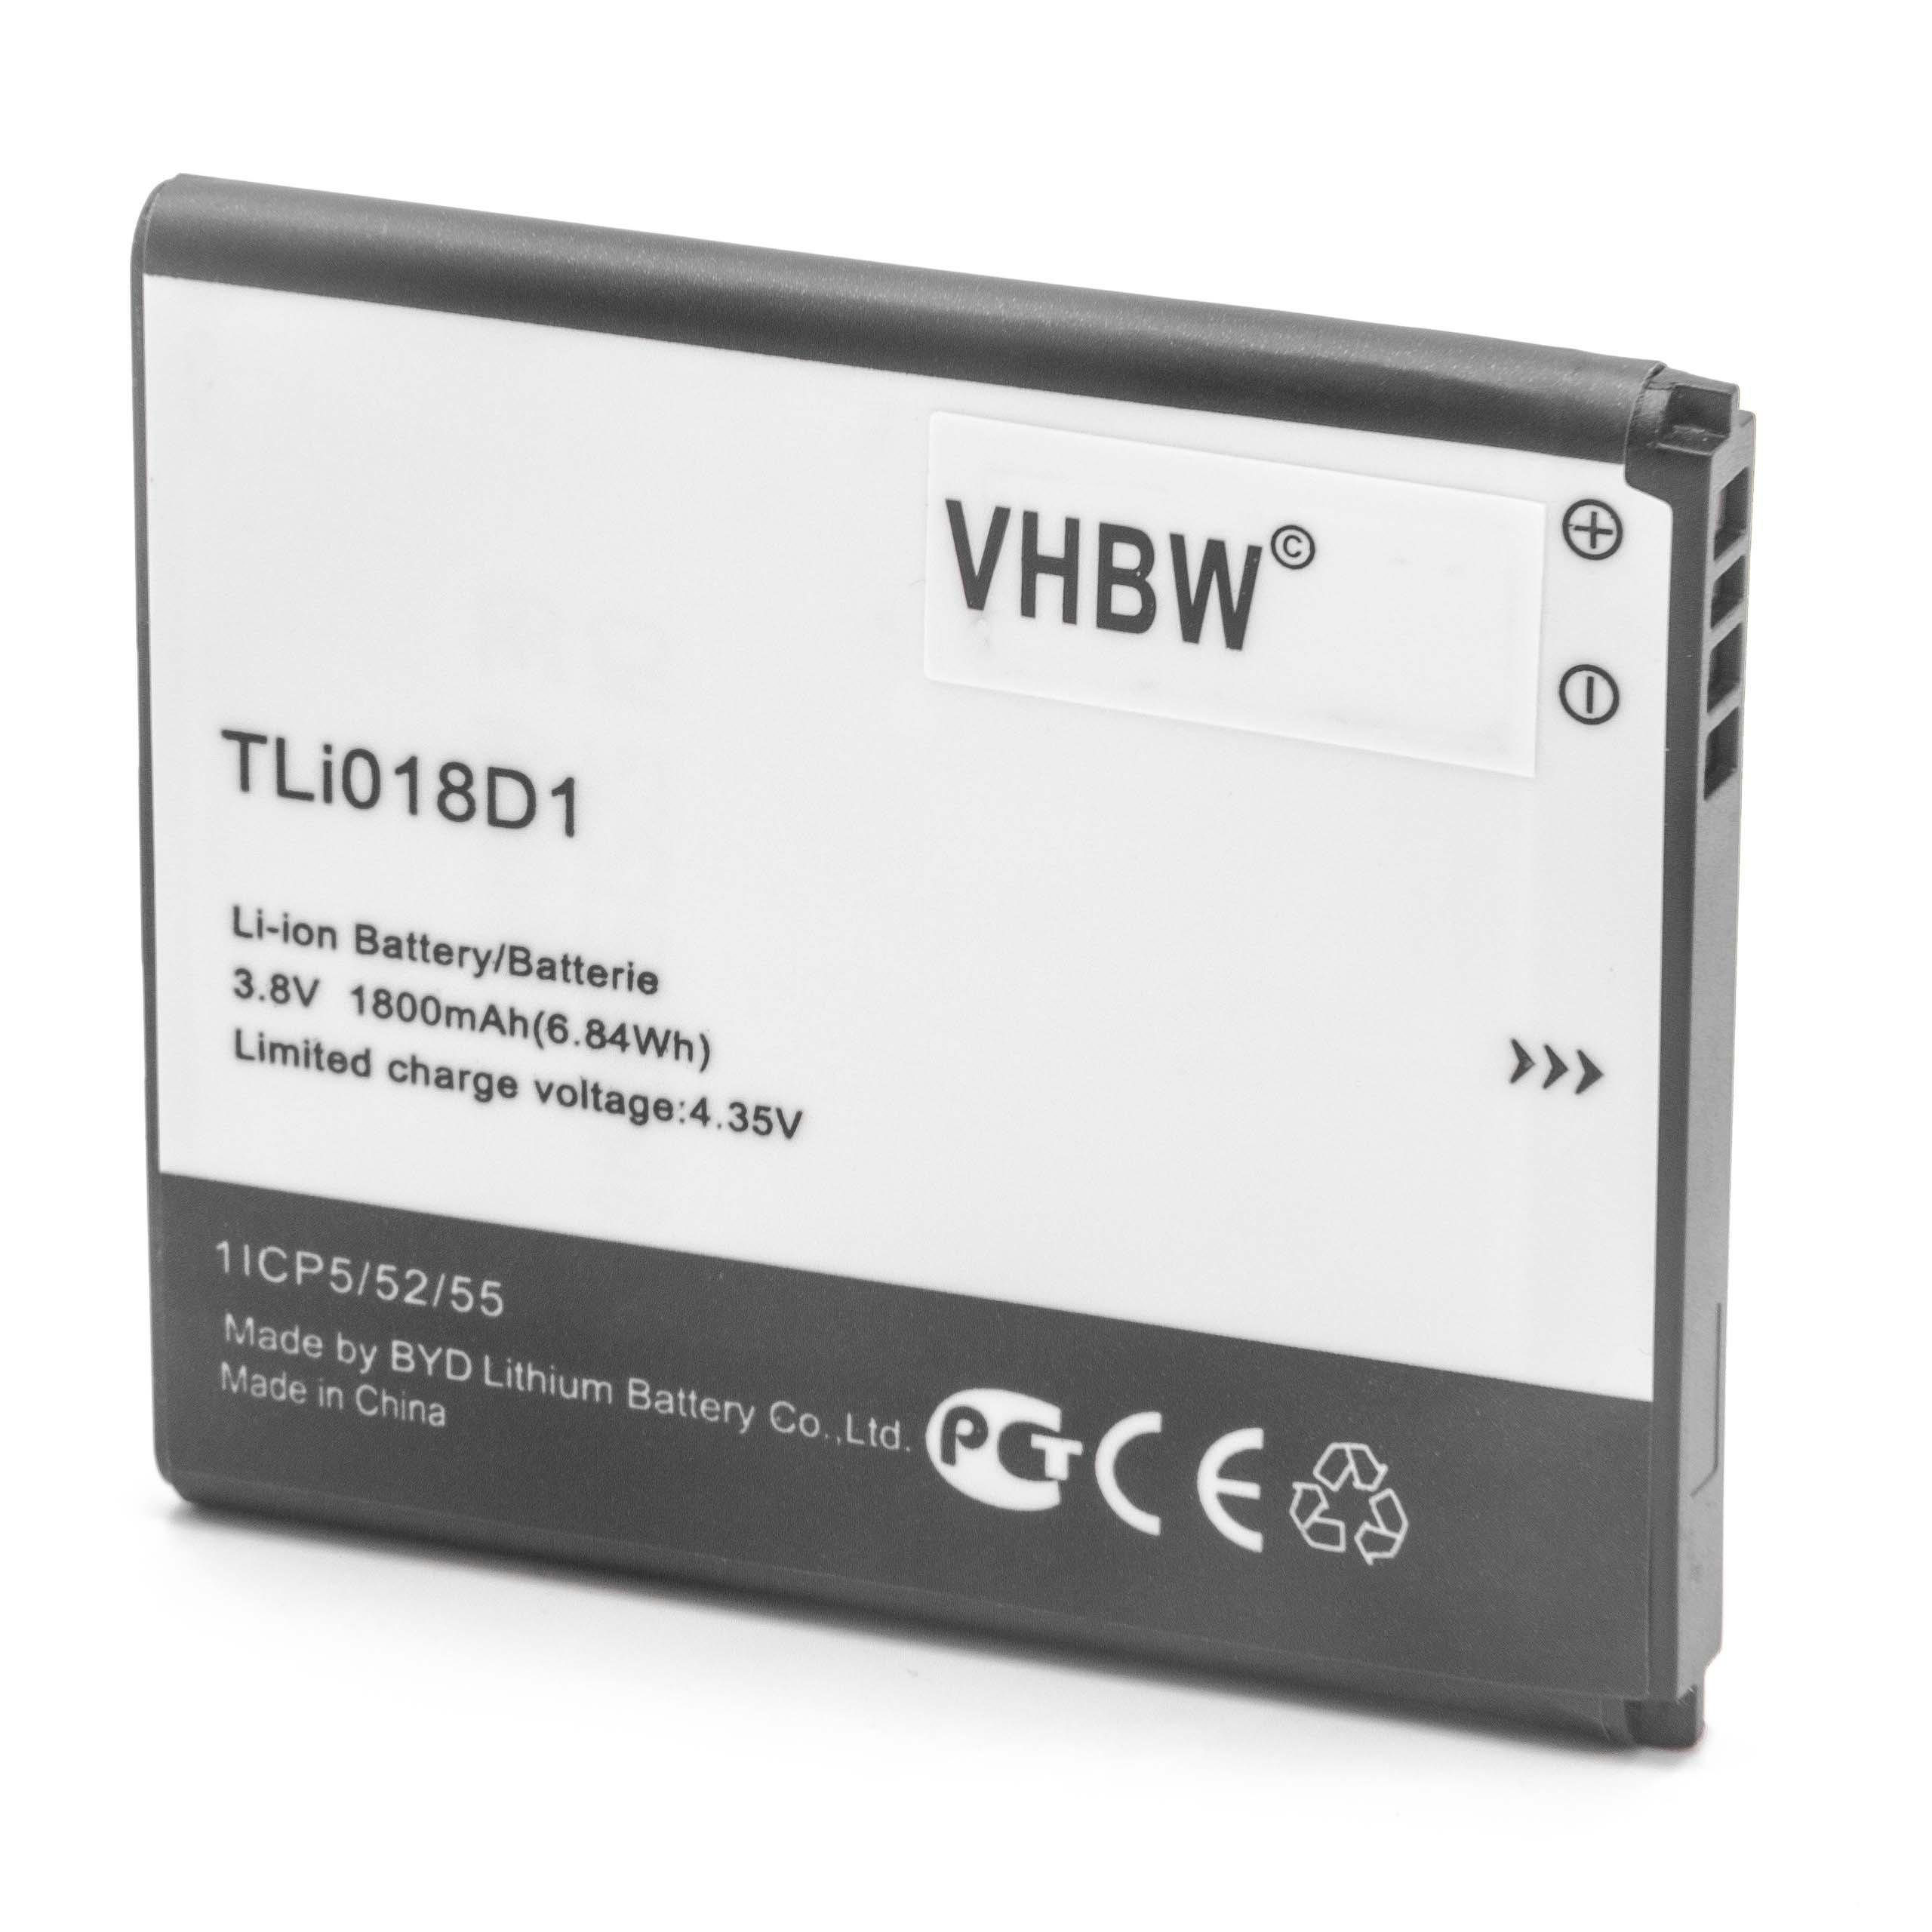 vhbw passend für TCL One Touch OT-5038, OT-5038A, OT-5038D, OT-5038E, Smartphone-Akku 1800 mAh